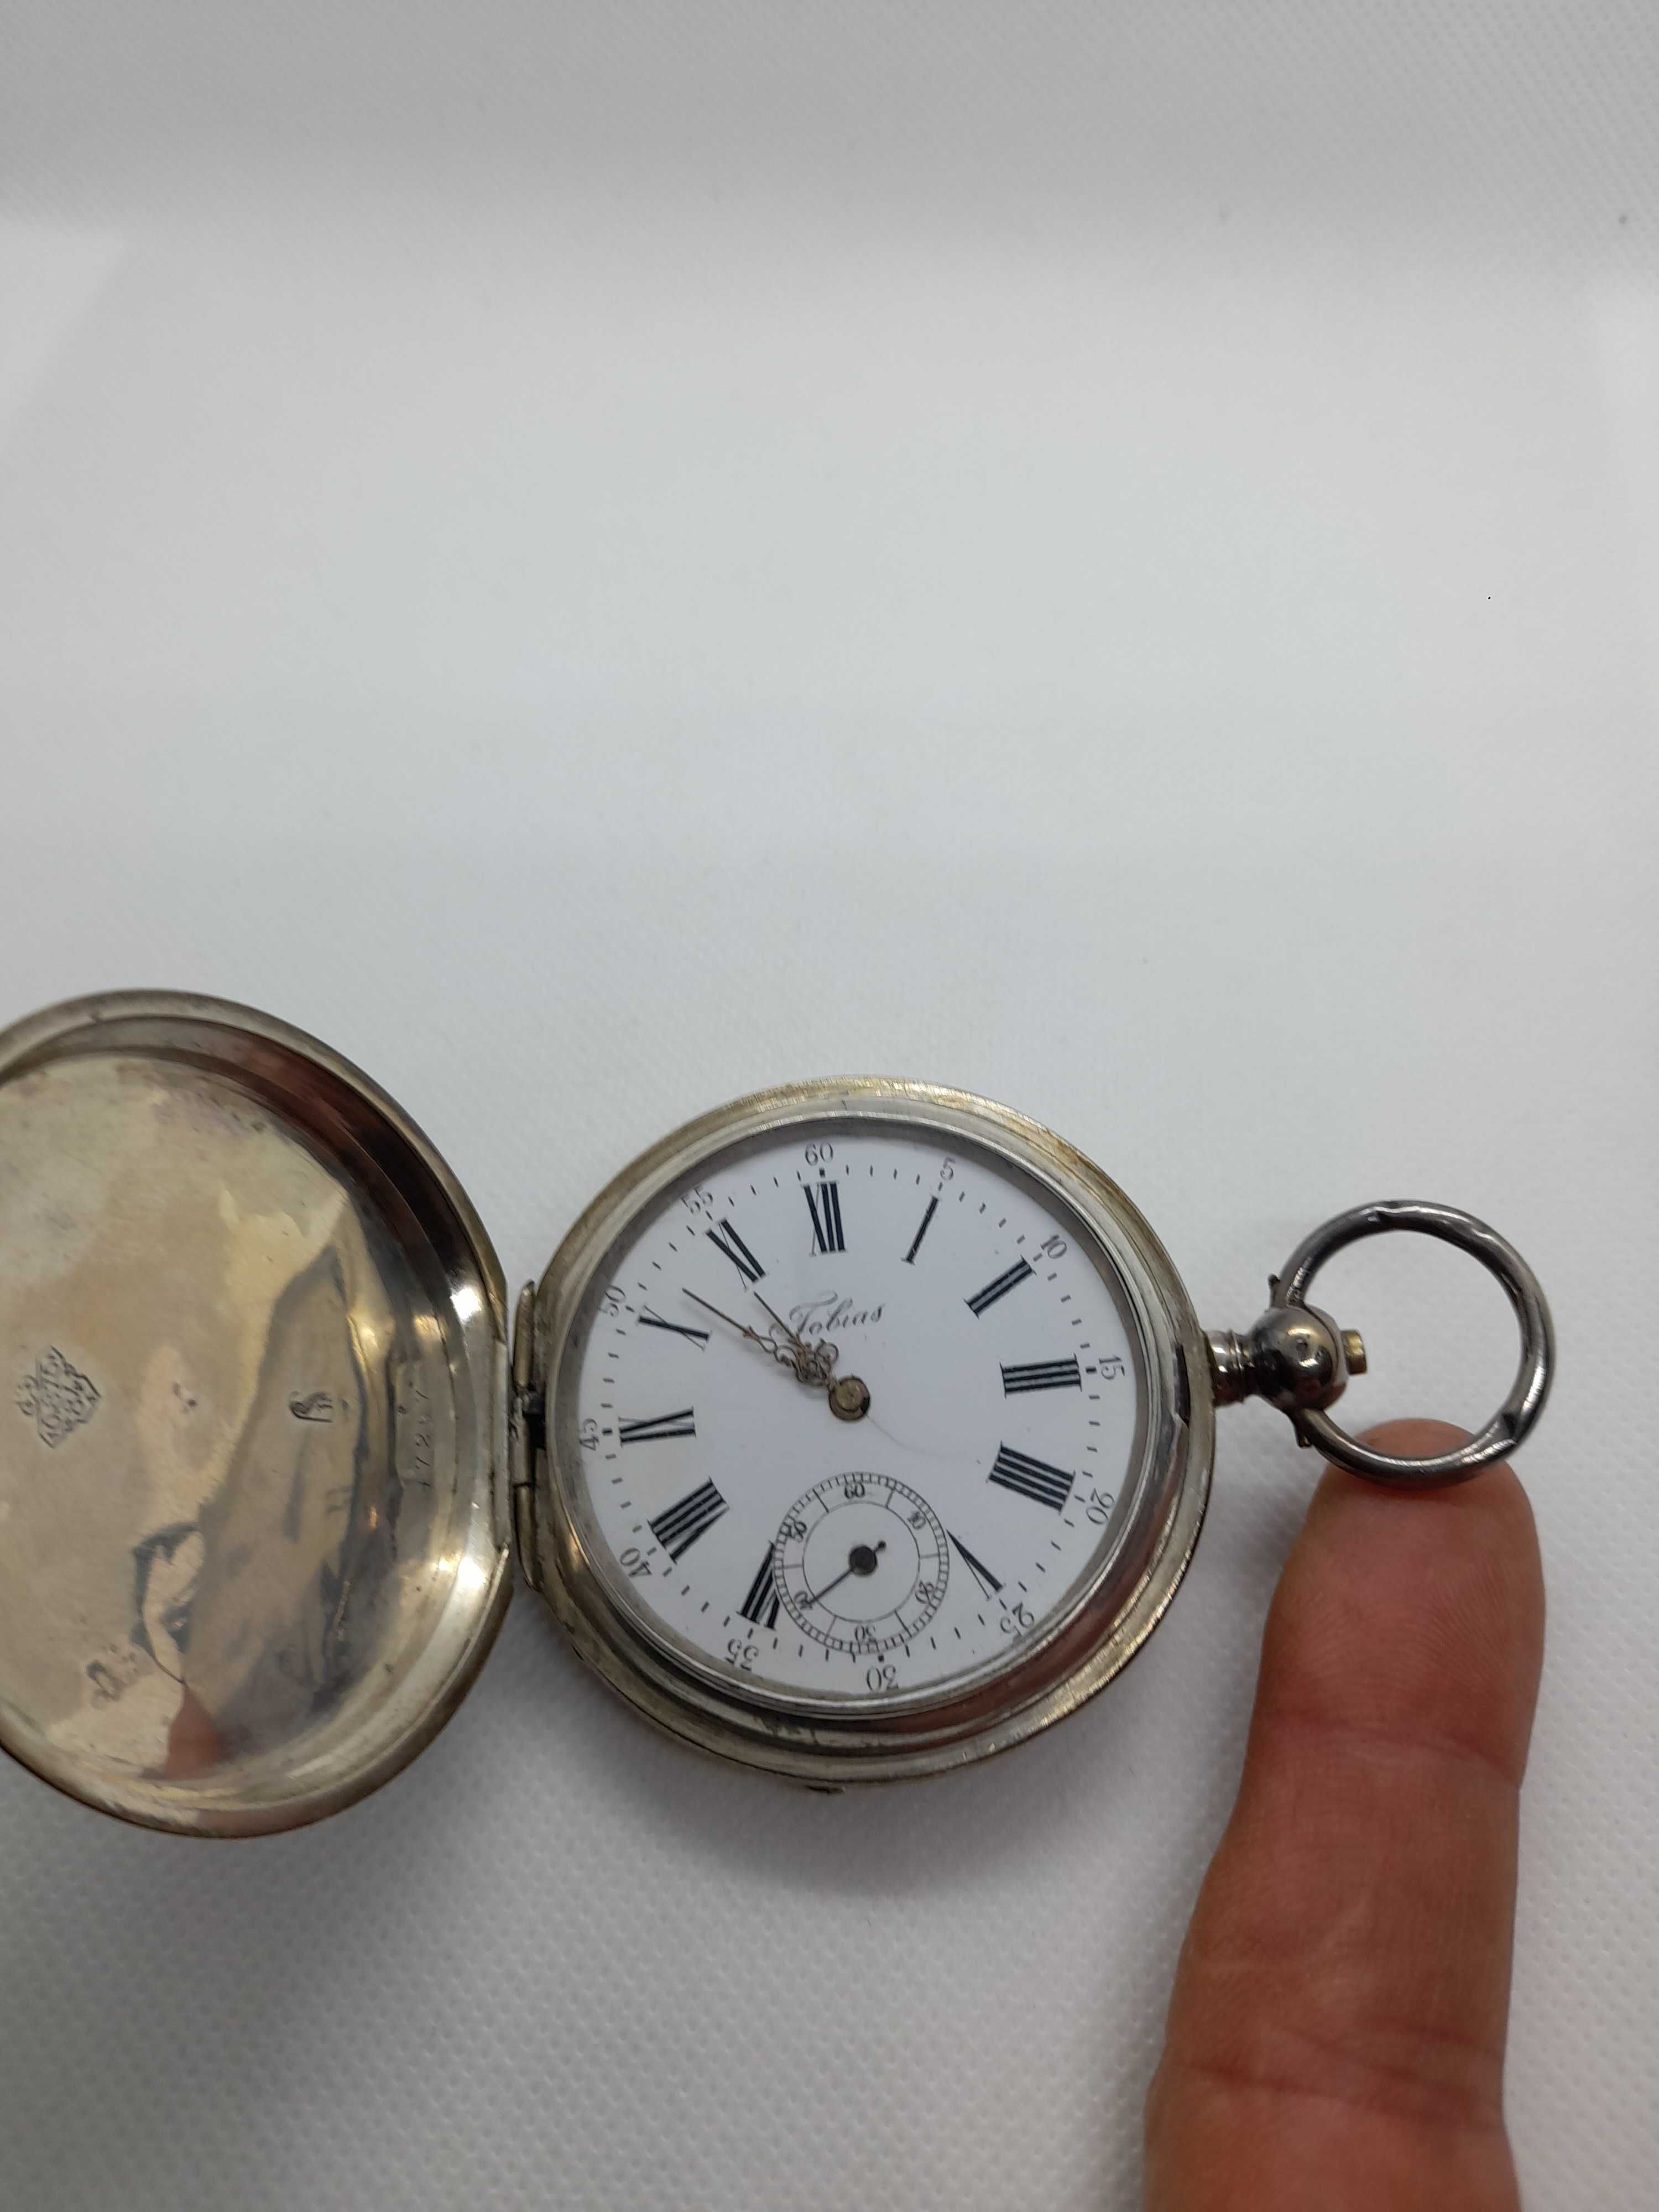 Zegarek srebro kieszonkowy Tobias lX wiek